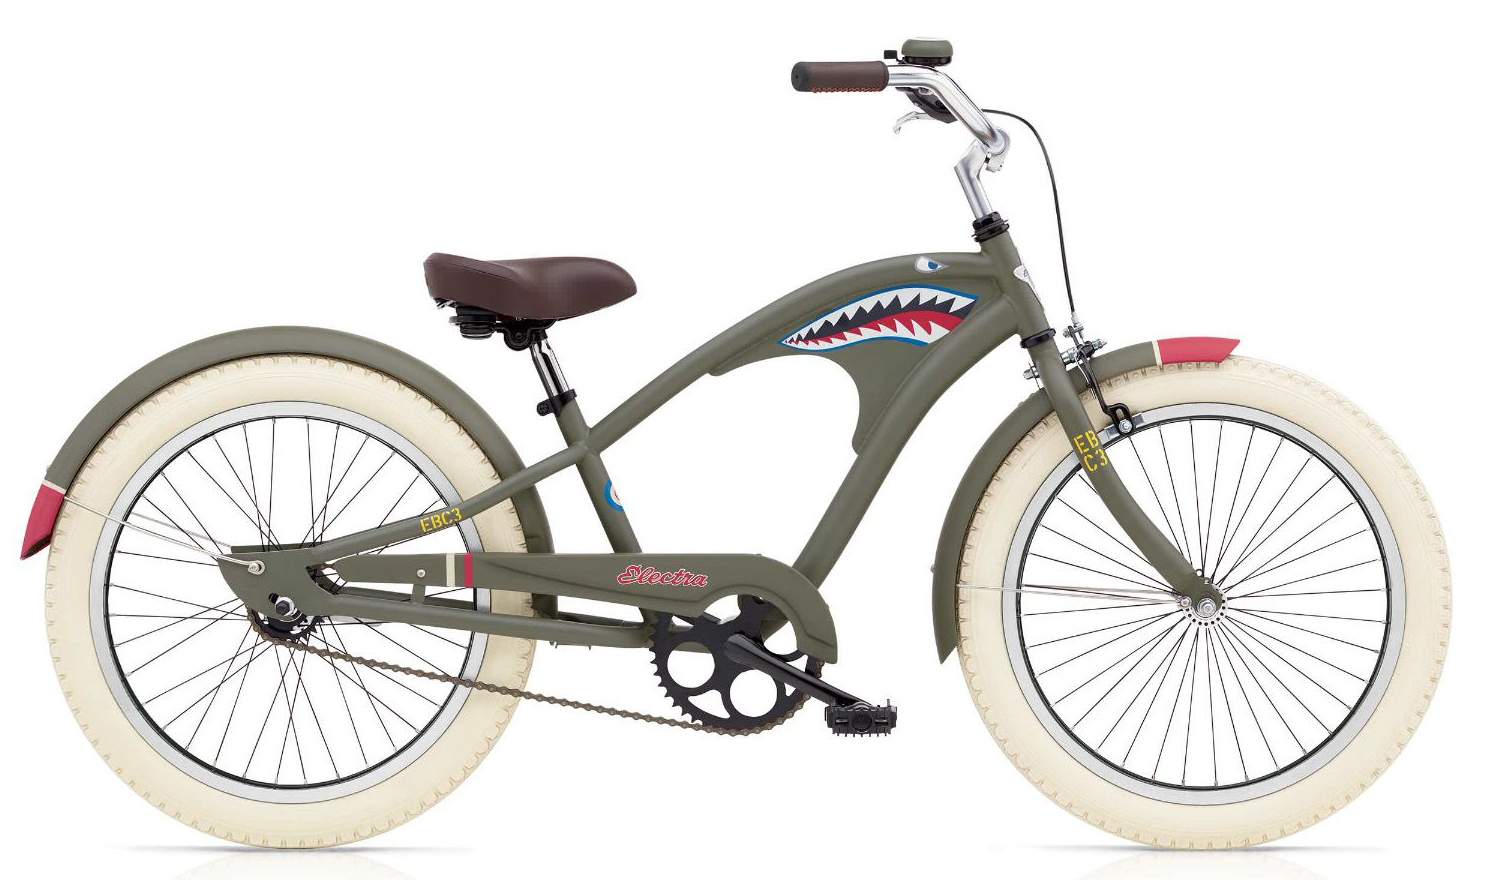  Отзывы о Детском велосипеде Electra Tiger Shark 3i '20 2019